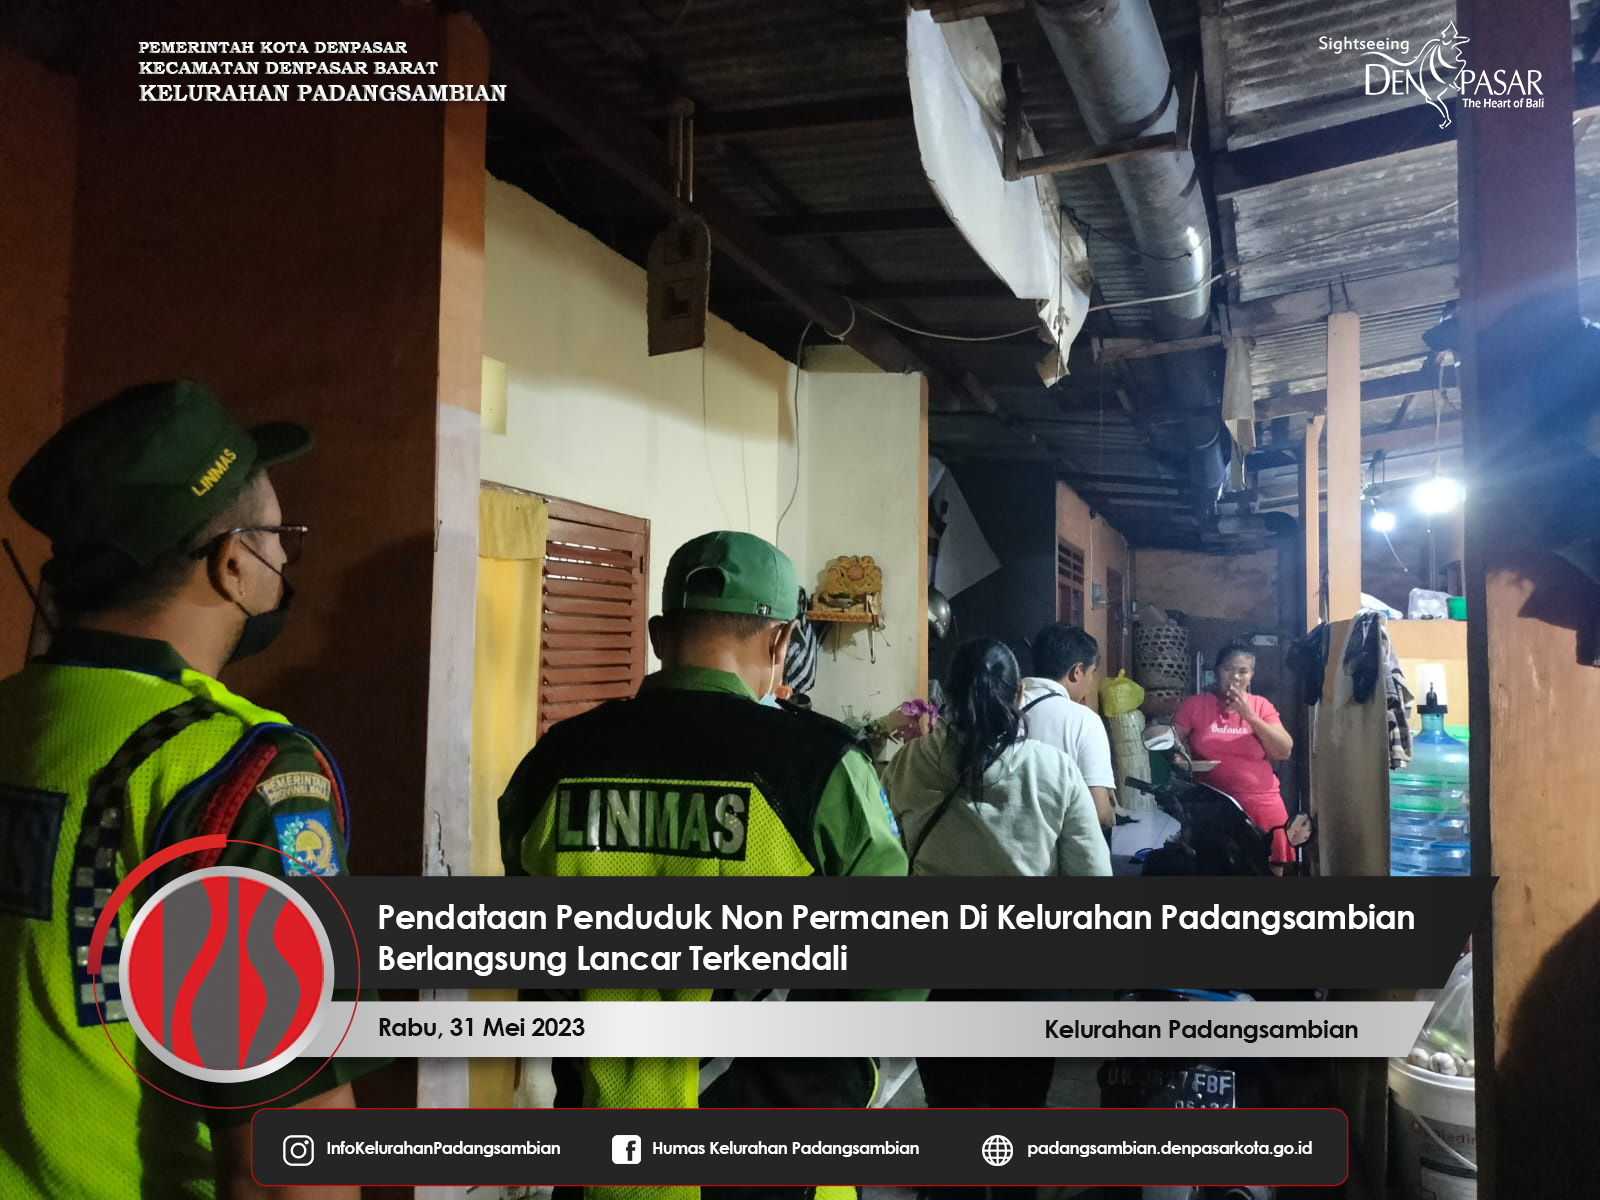 Pendataan Penduduk Non Permanen Lanjutan Di Kelurahan Padangsambian Berlangsung Lancar Terkendali